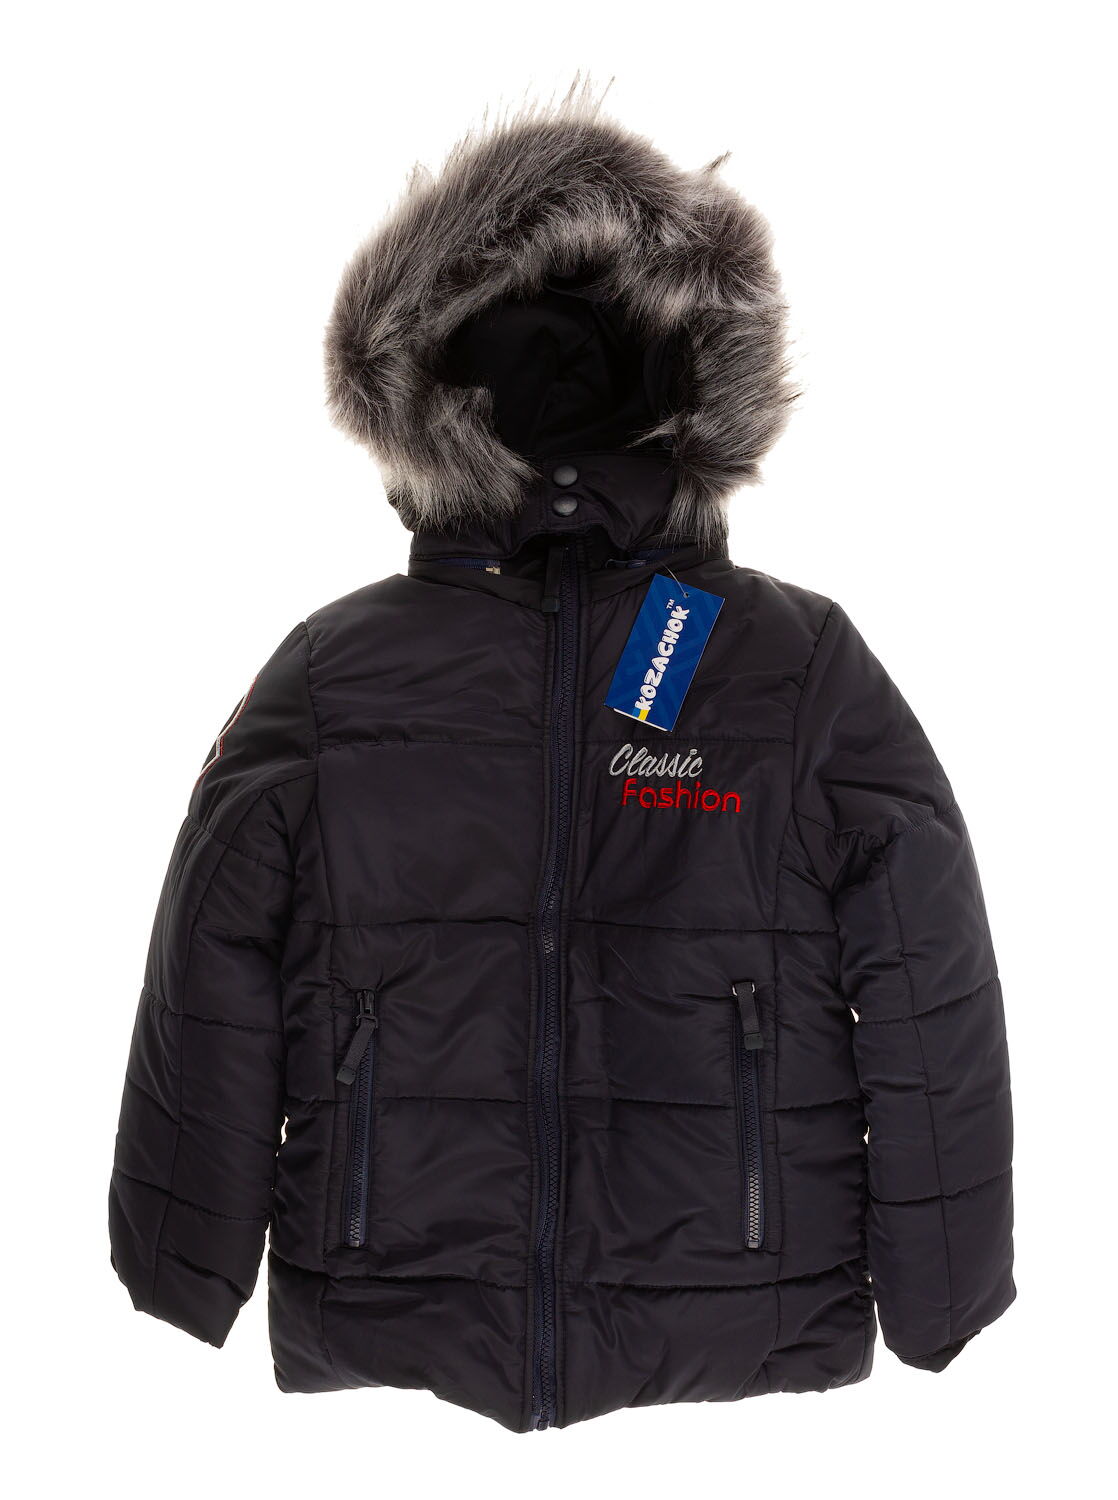 Куртка зимняя для мальчика Kozachok Classic Fashion темно-синяя - цена